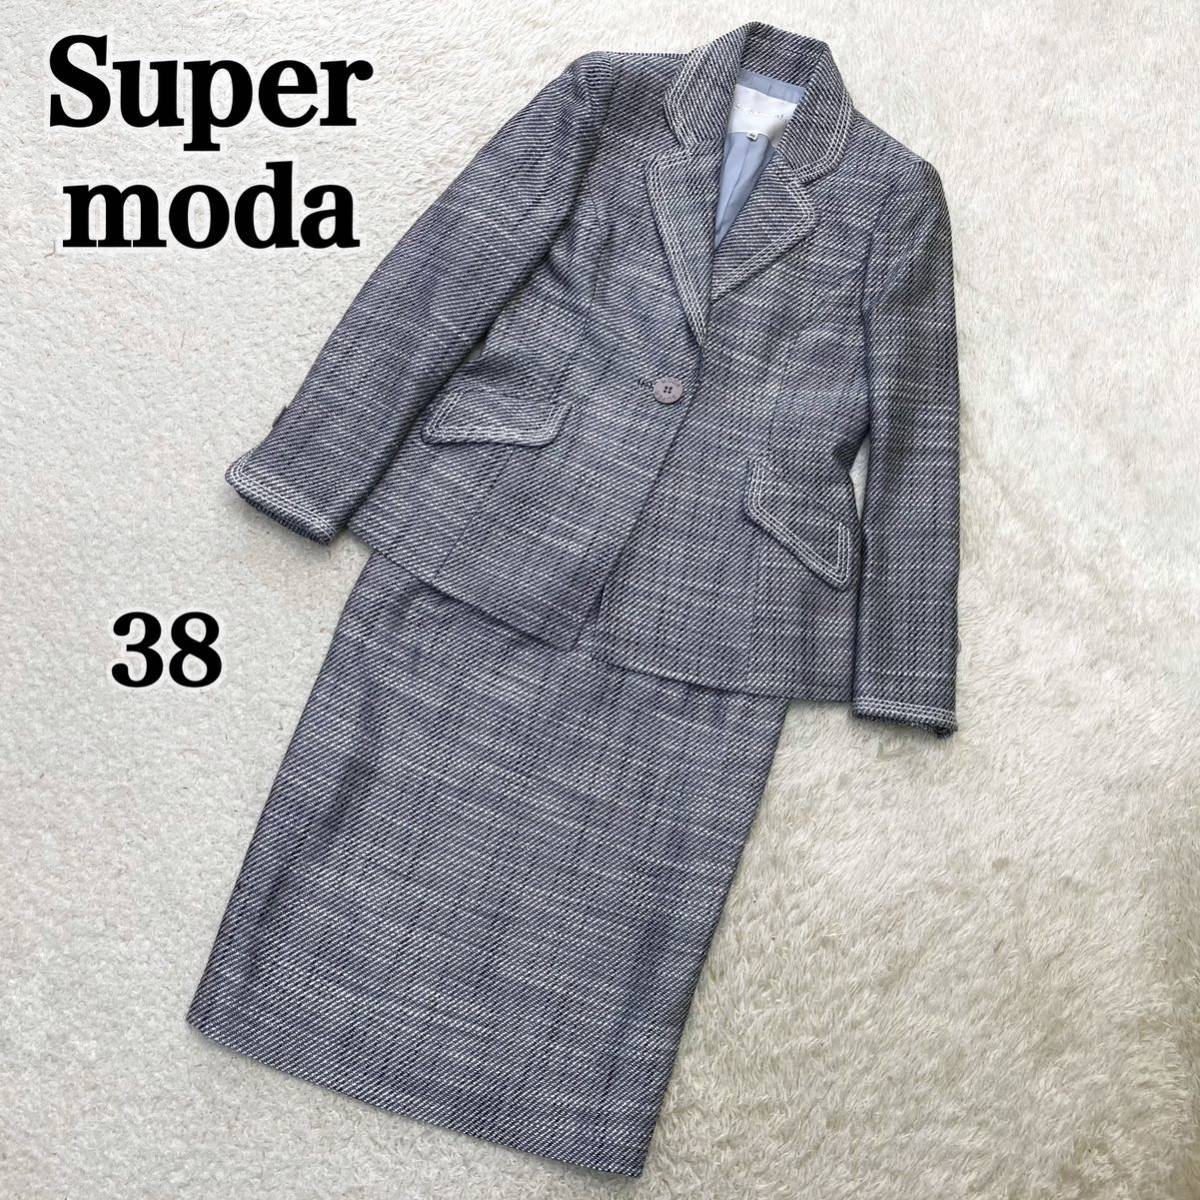 極美品 スペルモーダ セットアップ スーツ ジャケット スカート 38 ツイード フォーマル オフィス _画像1